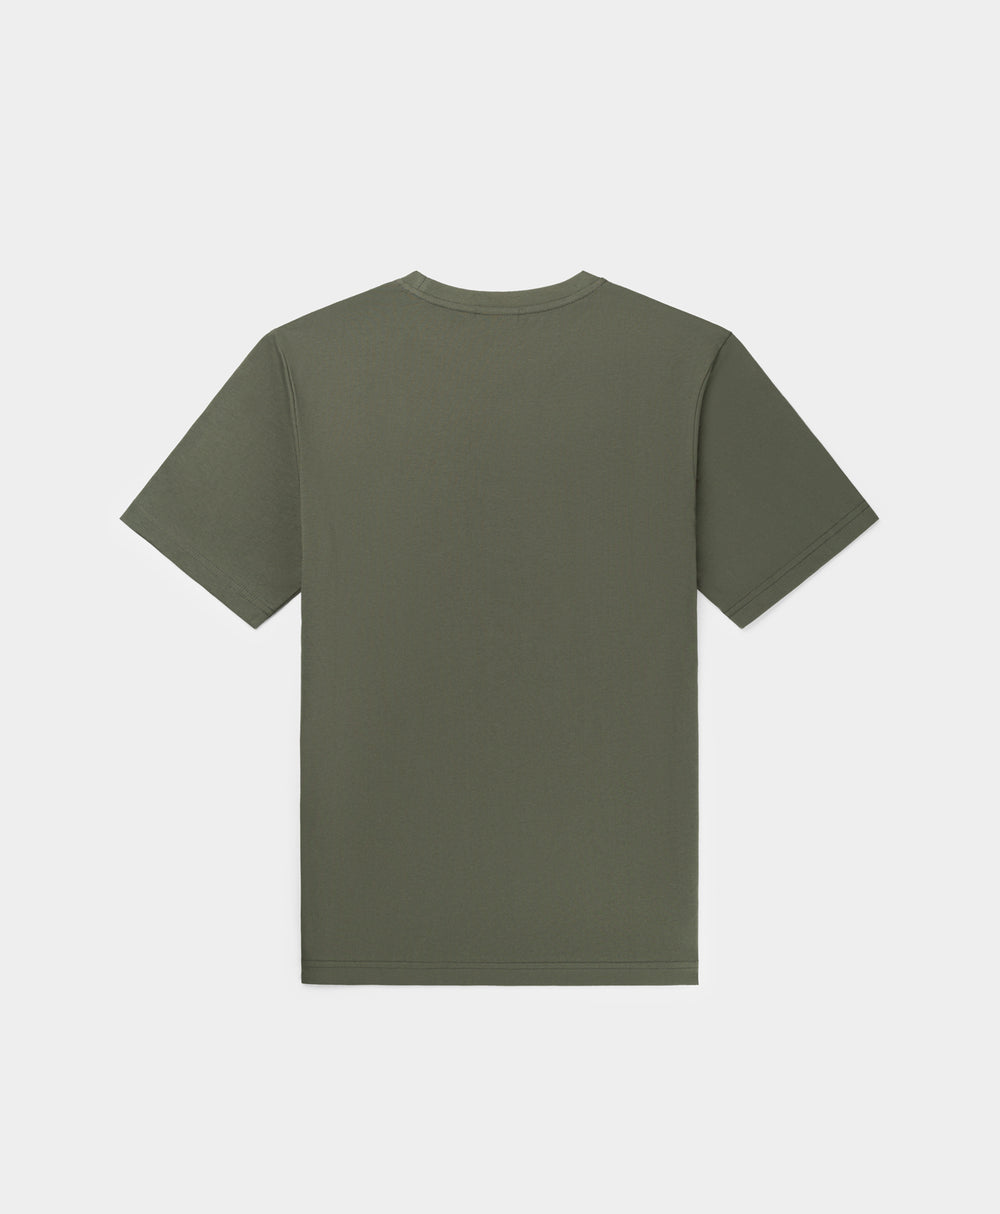 DP - Chimera Green Logotype T-Shirt - Packshot - Rear